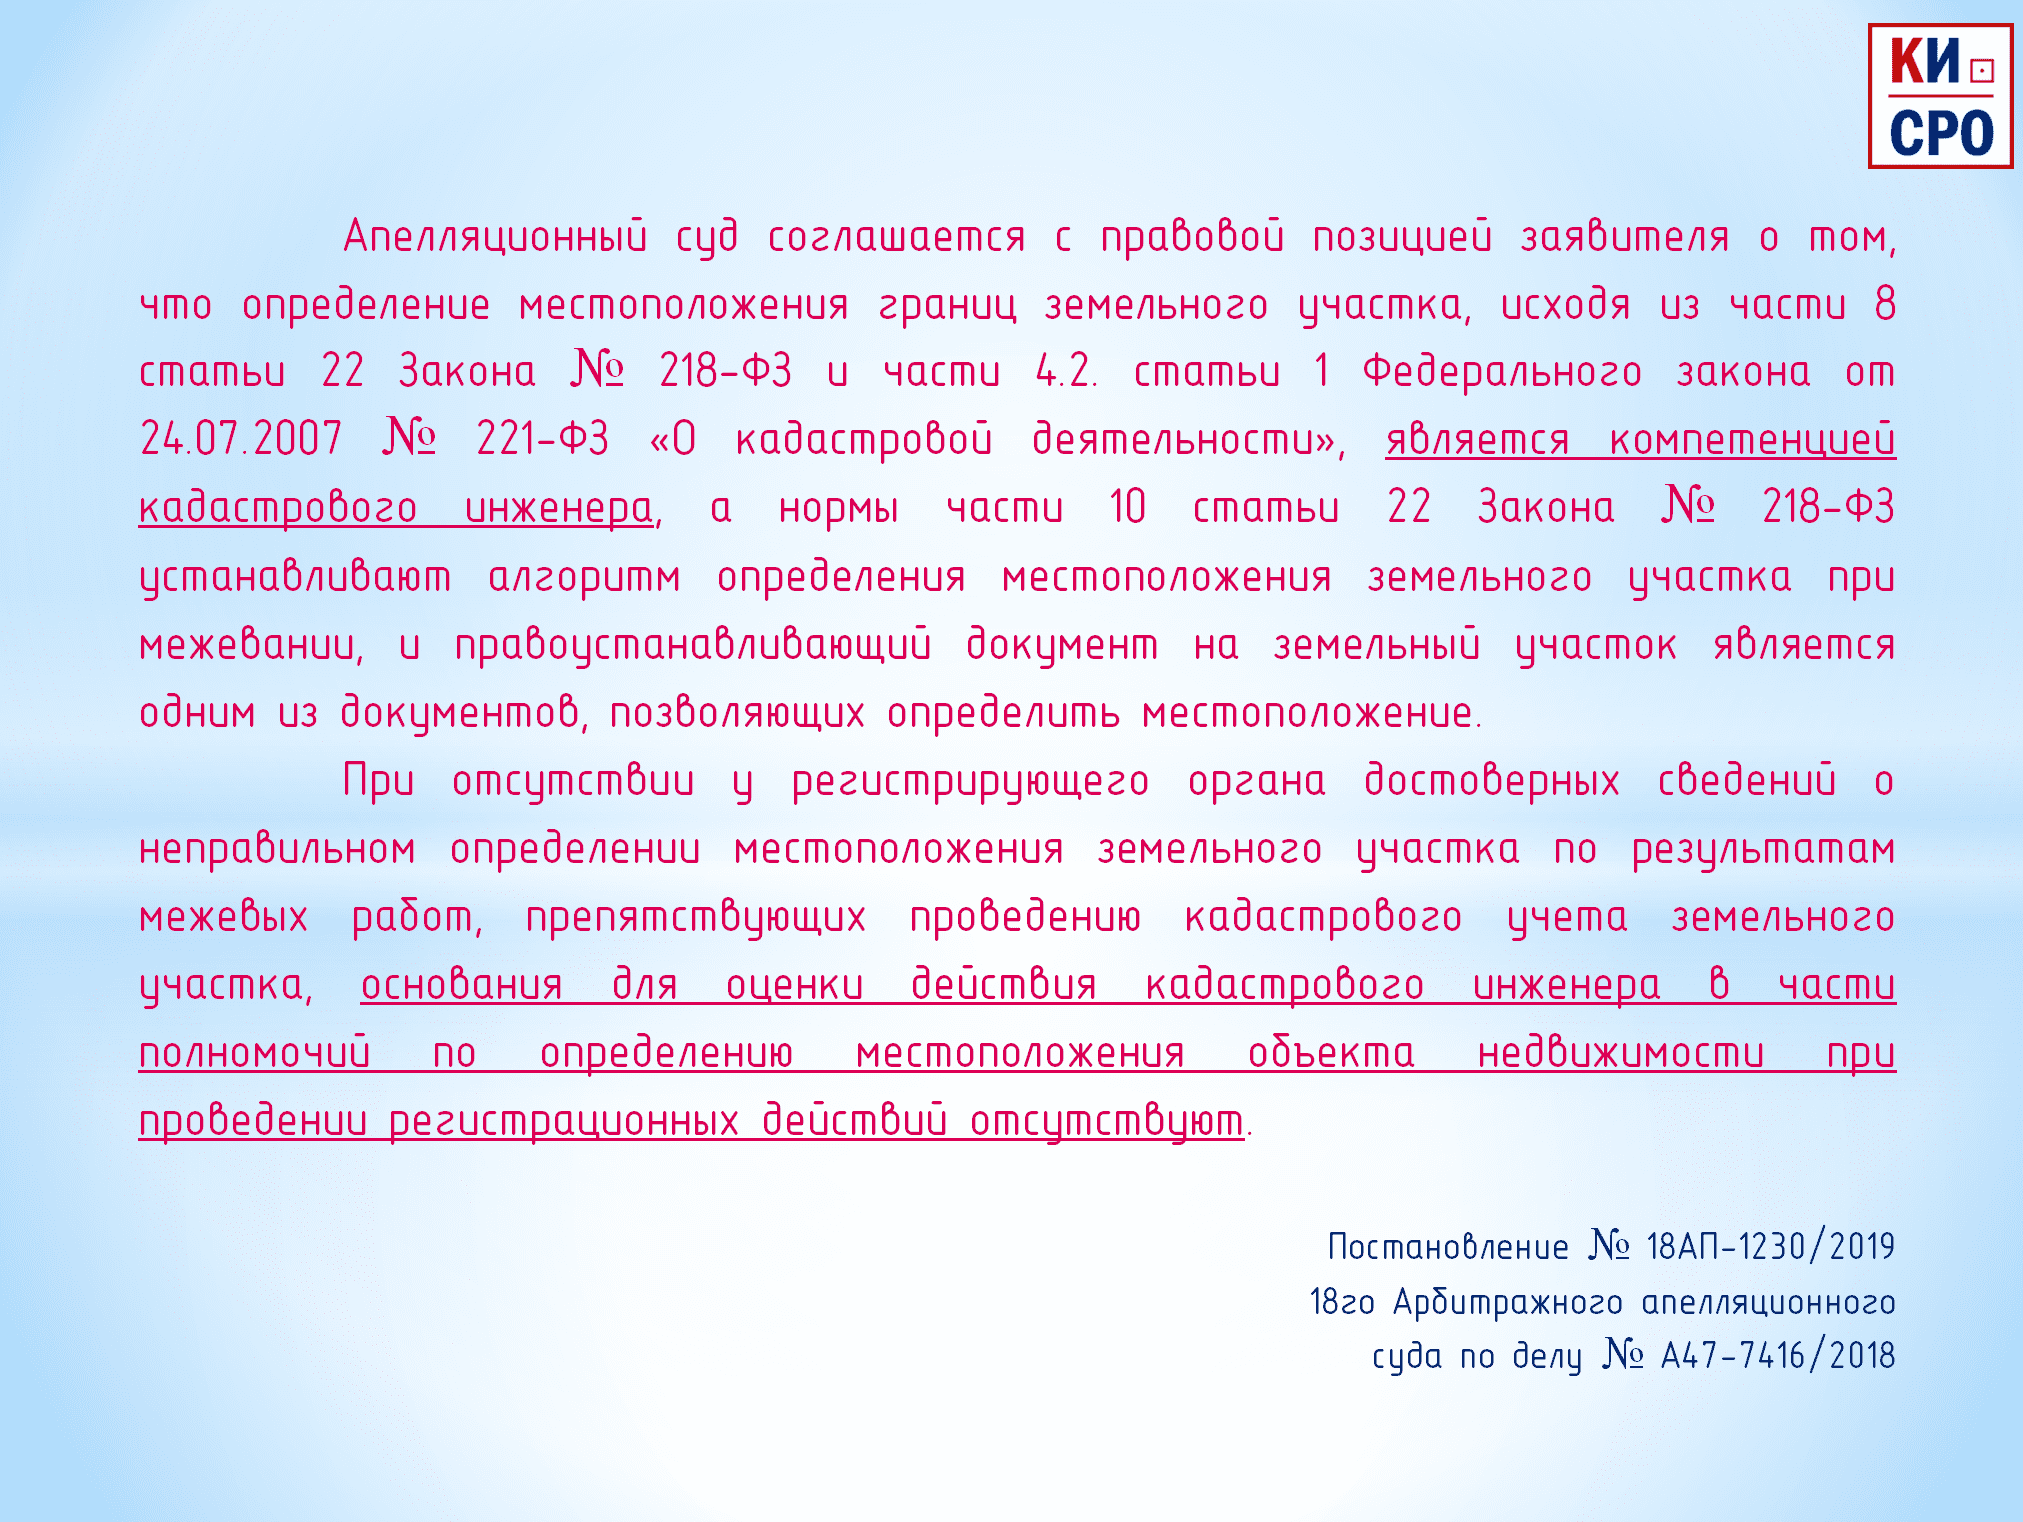 Постановление № 18АП-1230/2019 18го Арбитражного апелляционного суда по делу № А47-7416/2018